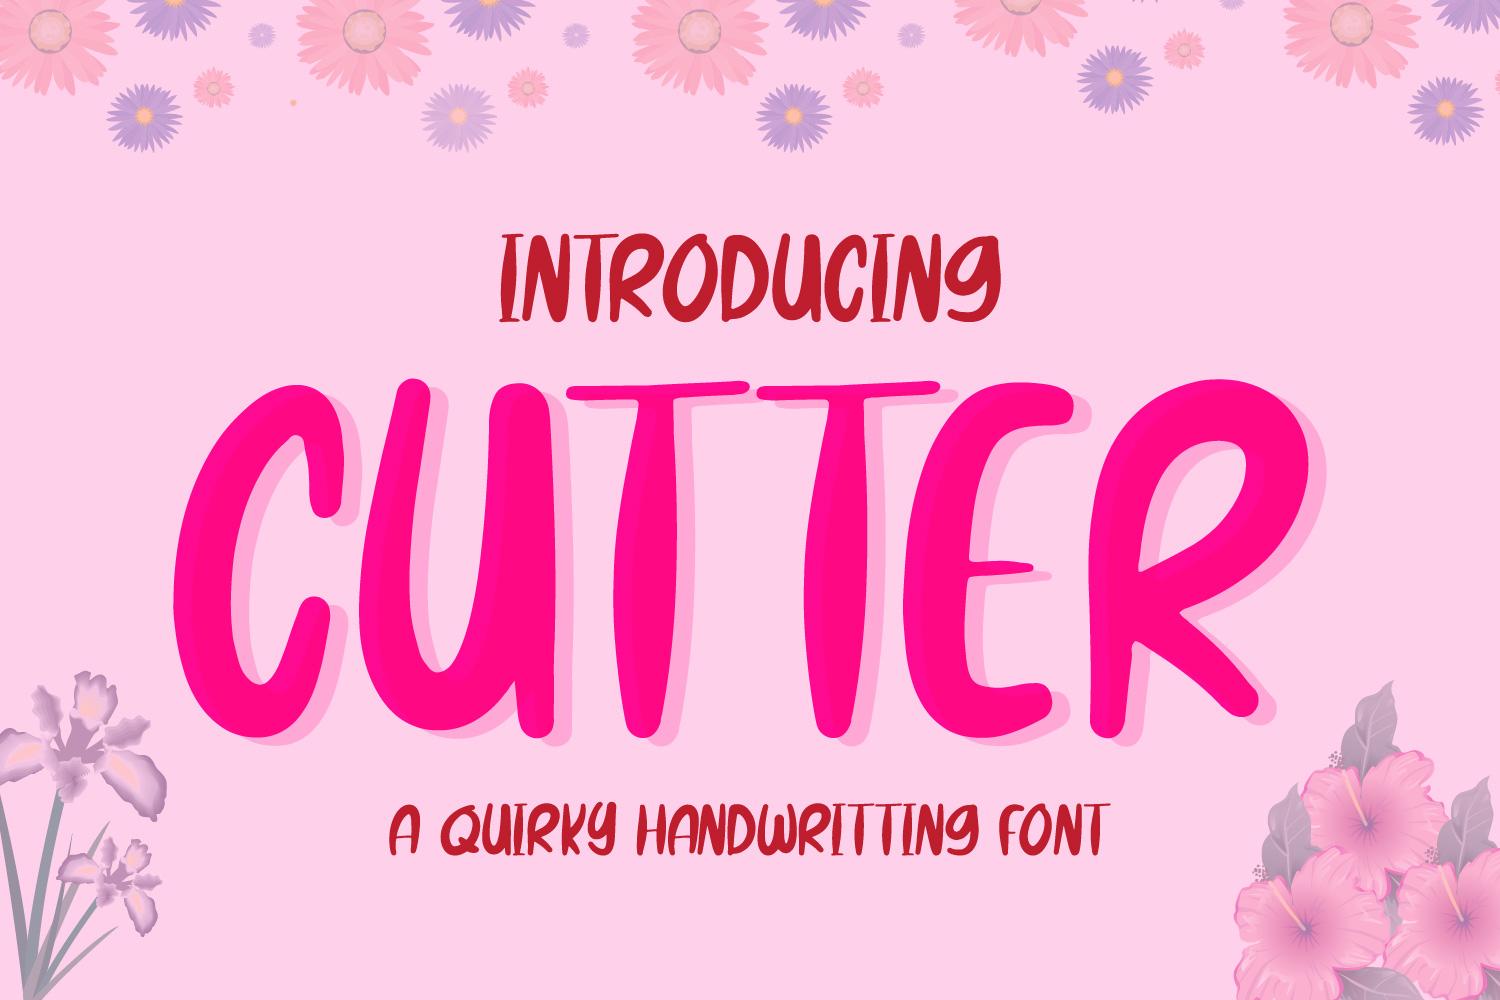 Cutter Font